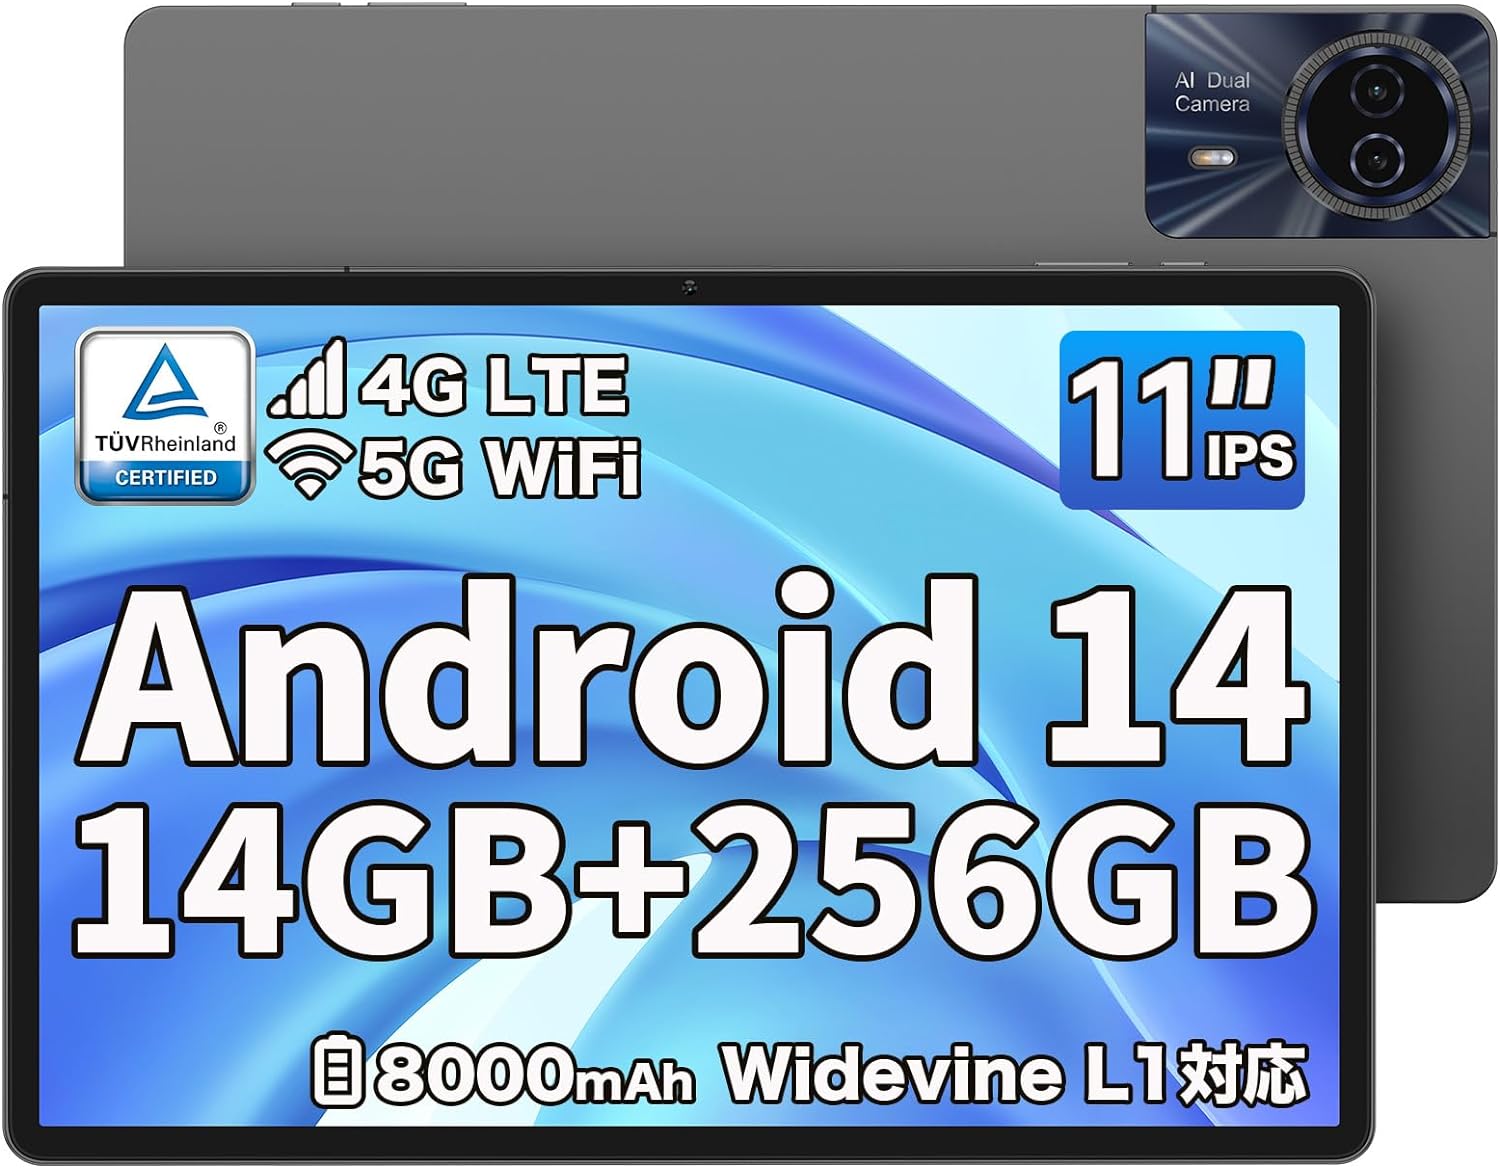 Android 14 タブレット 11インチ、TECLAST T50HD アンドロイド14タブレット 14GB+256GB+1TB拡張、Widevine L1対応 タブレット 8コアCPU、SIMフリー タブレット 4G LTE+5G WIFI、8000mAh+Type-C充電、1920*1200 FHD IPS画面、13MP AIカメラ+GPS+BT5.0+TUVブルーライト認証